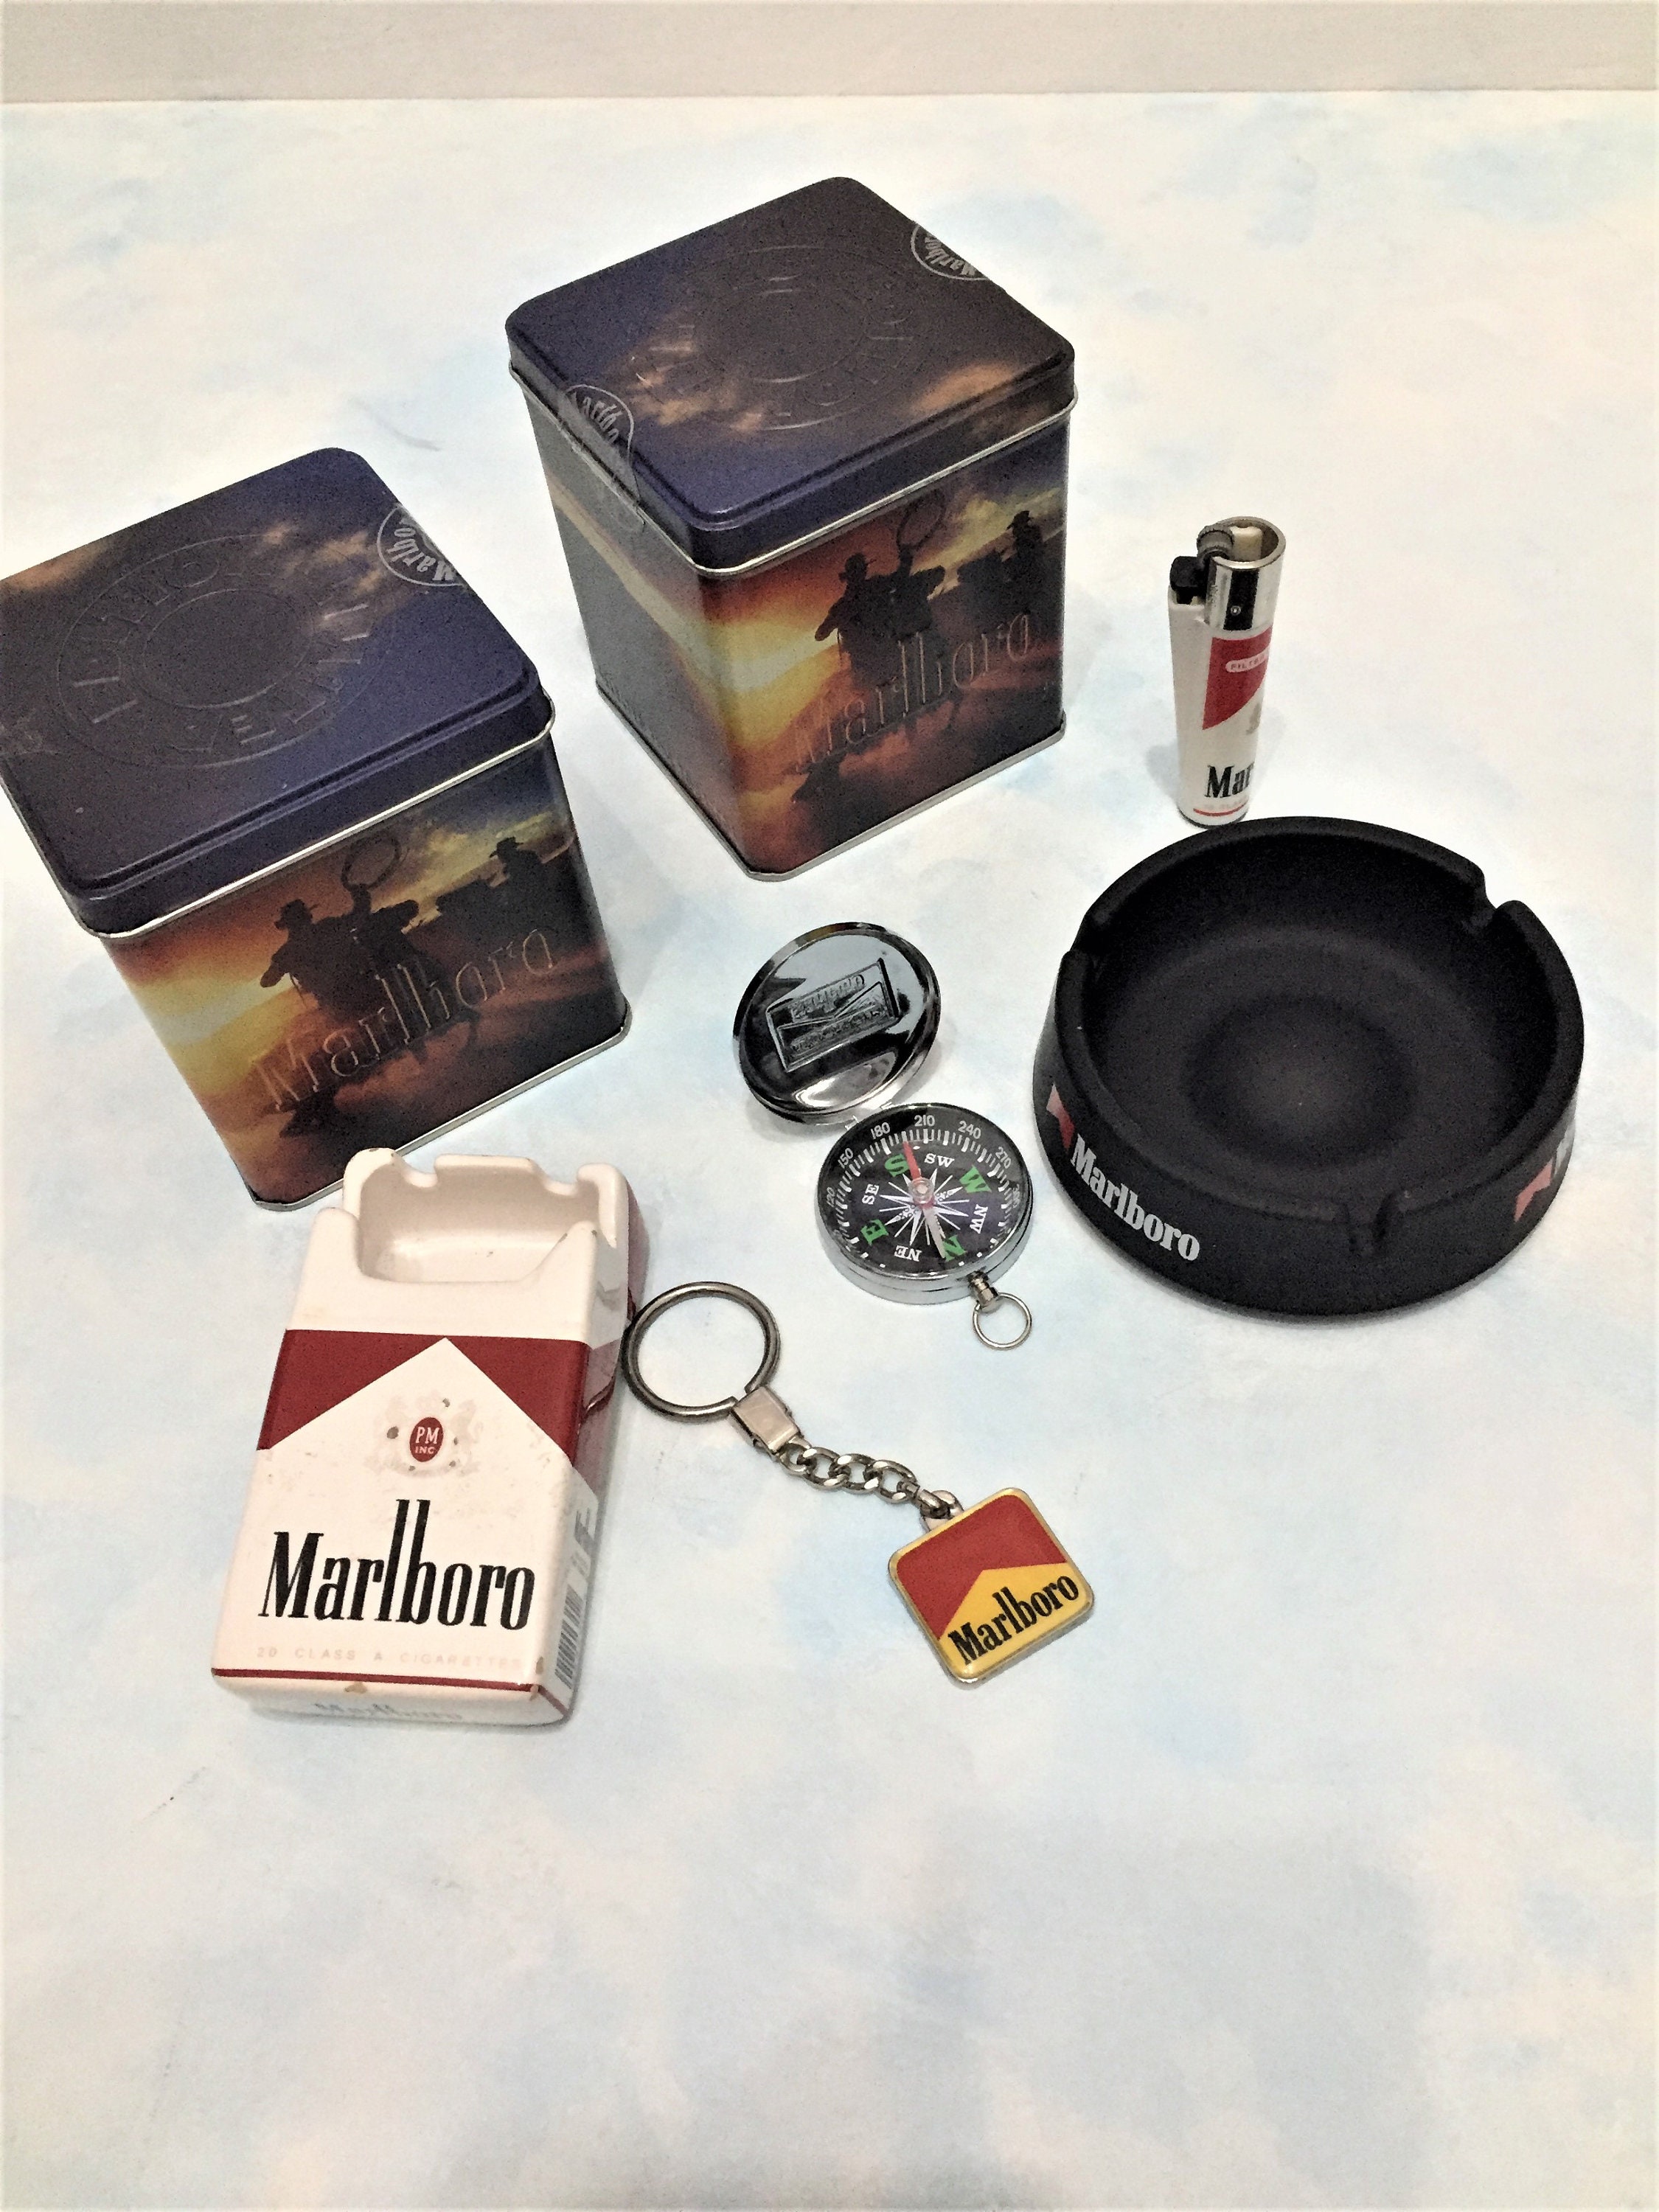 Marlboro Cigarette Box Digital Pocket Scale